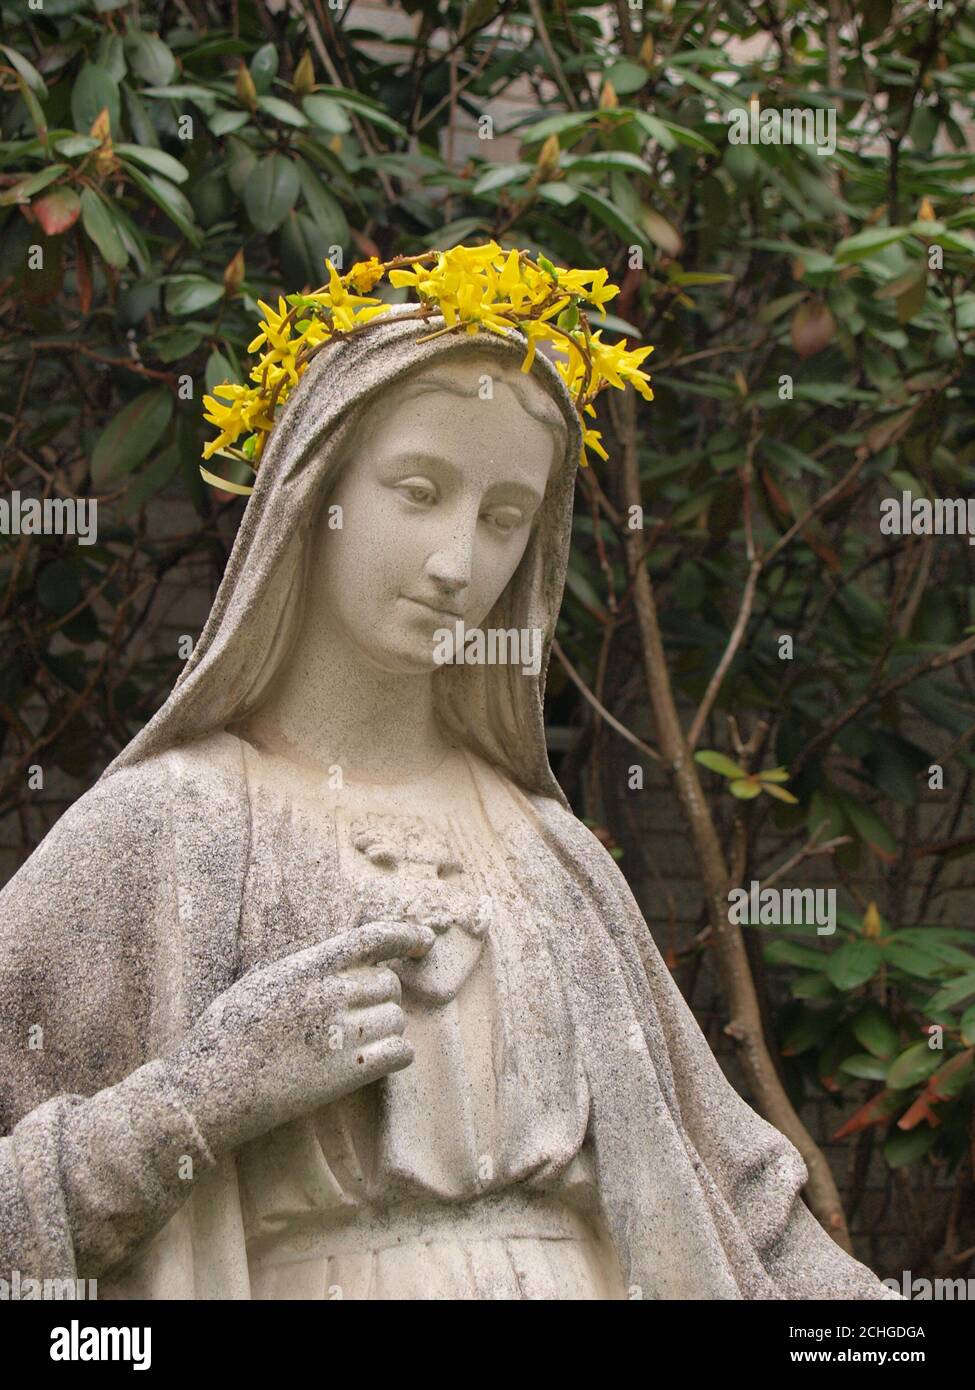 Una statua della Vergine Maria è stata data a. corona di fiori di forsizia in una cerimonia devozionale chiamata il L'incoronazione della Madonna di solito a maggio Foto Stock